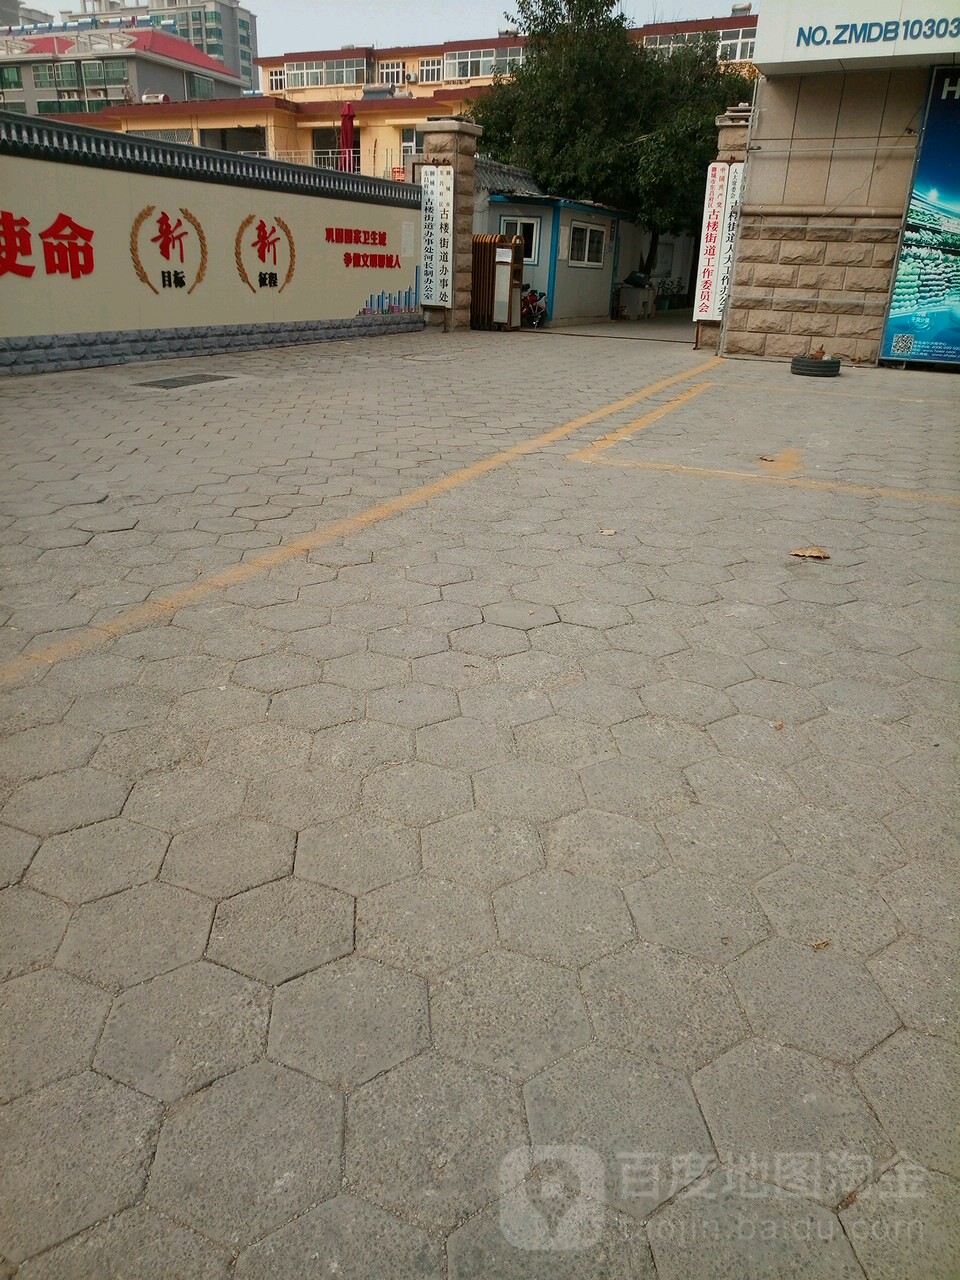 聊城市东昌府区兴华西路93号